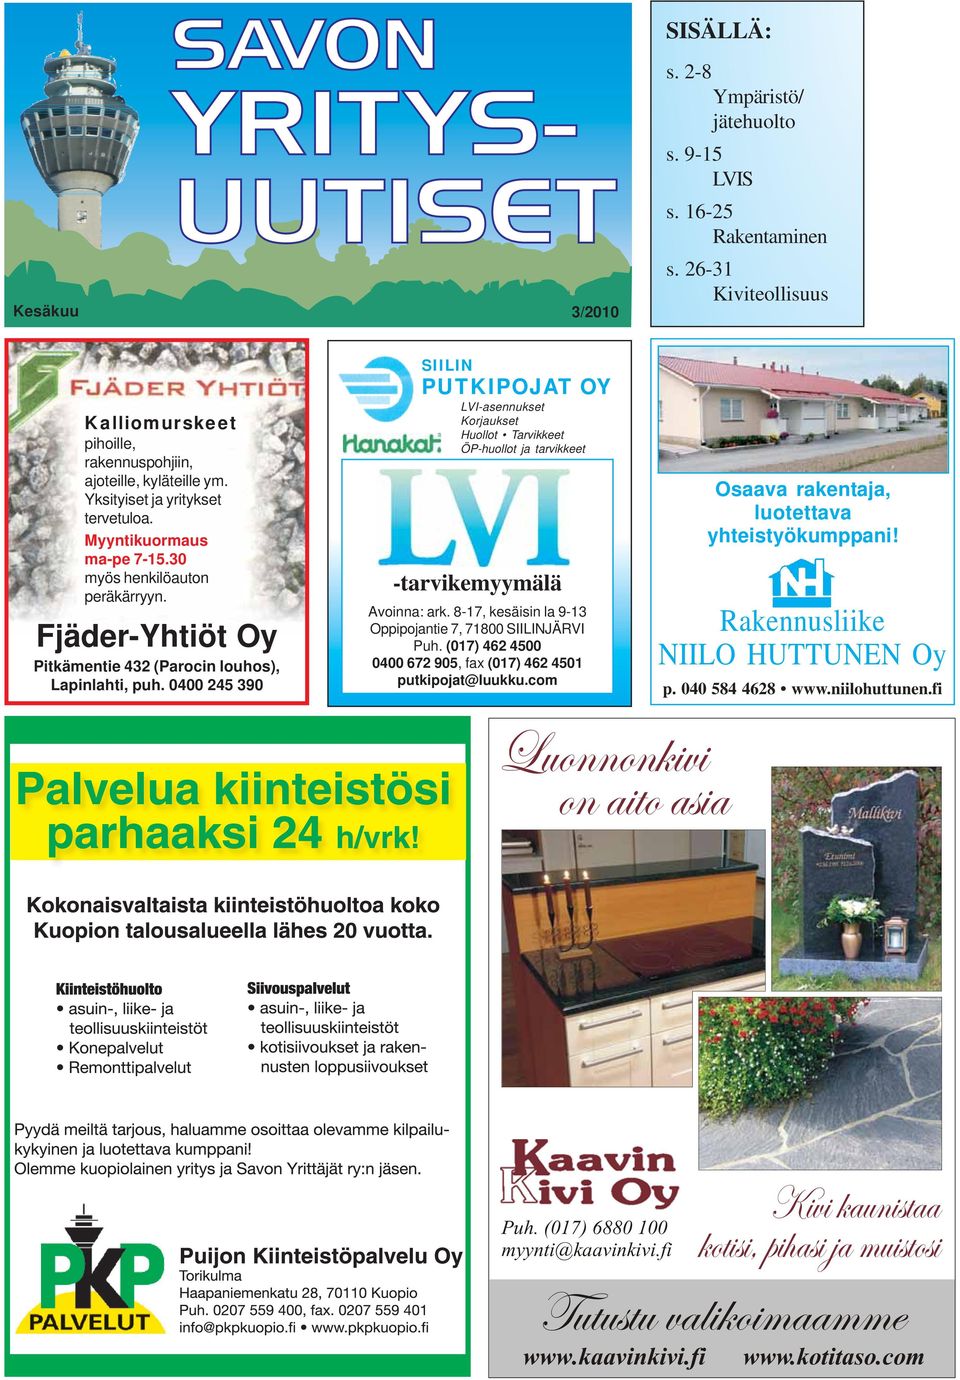 Fjäder-Yhtiöt Oy Pitkämentie 432 (Parocin louhos), Lapinlahti, puh.